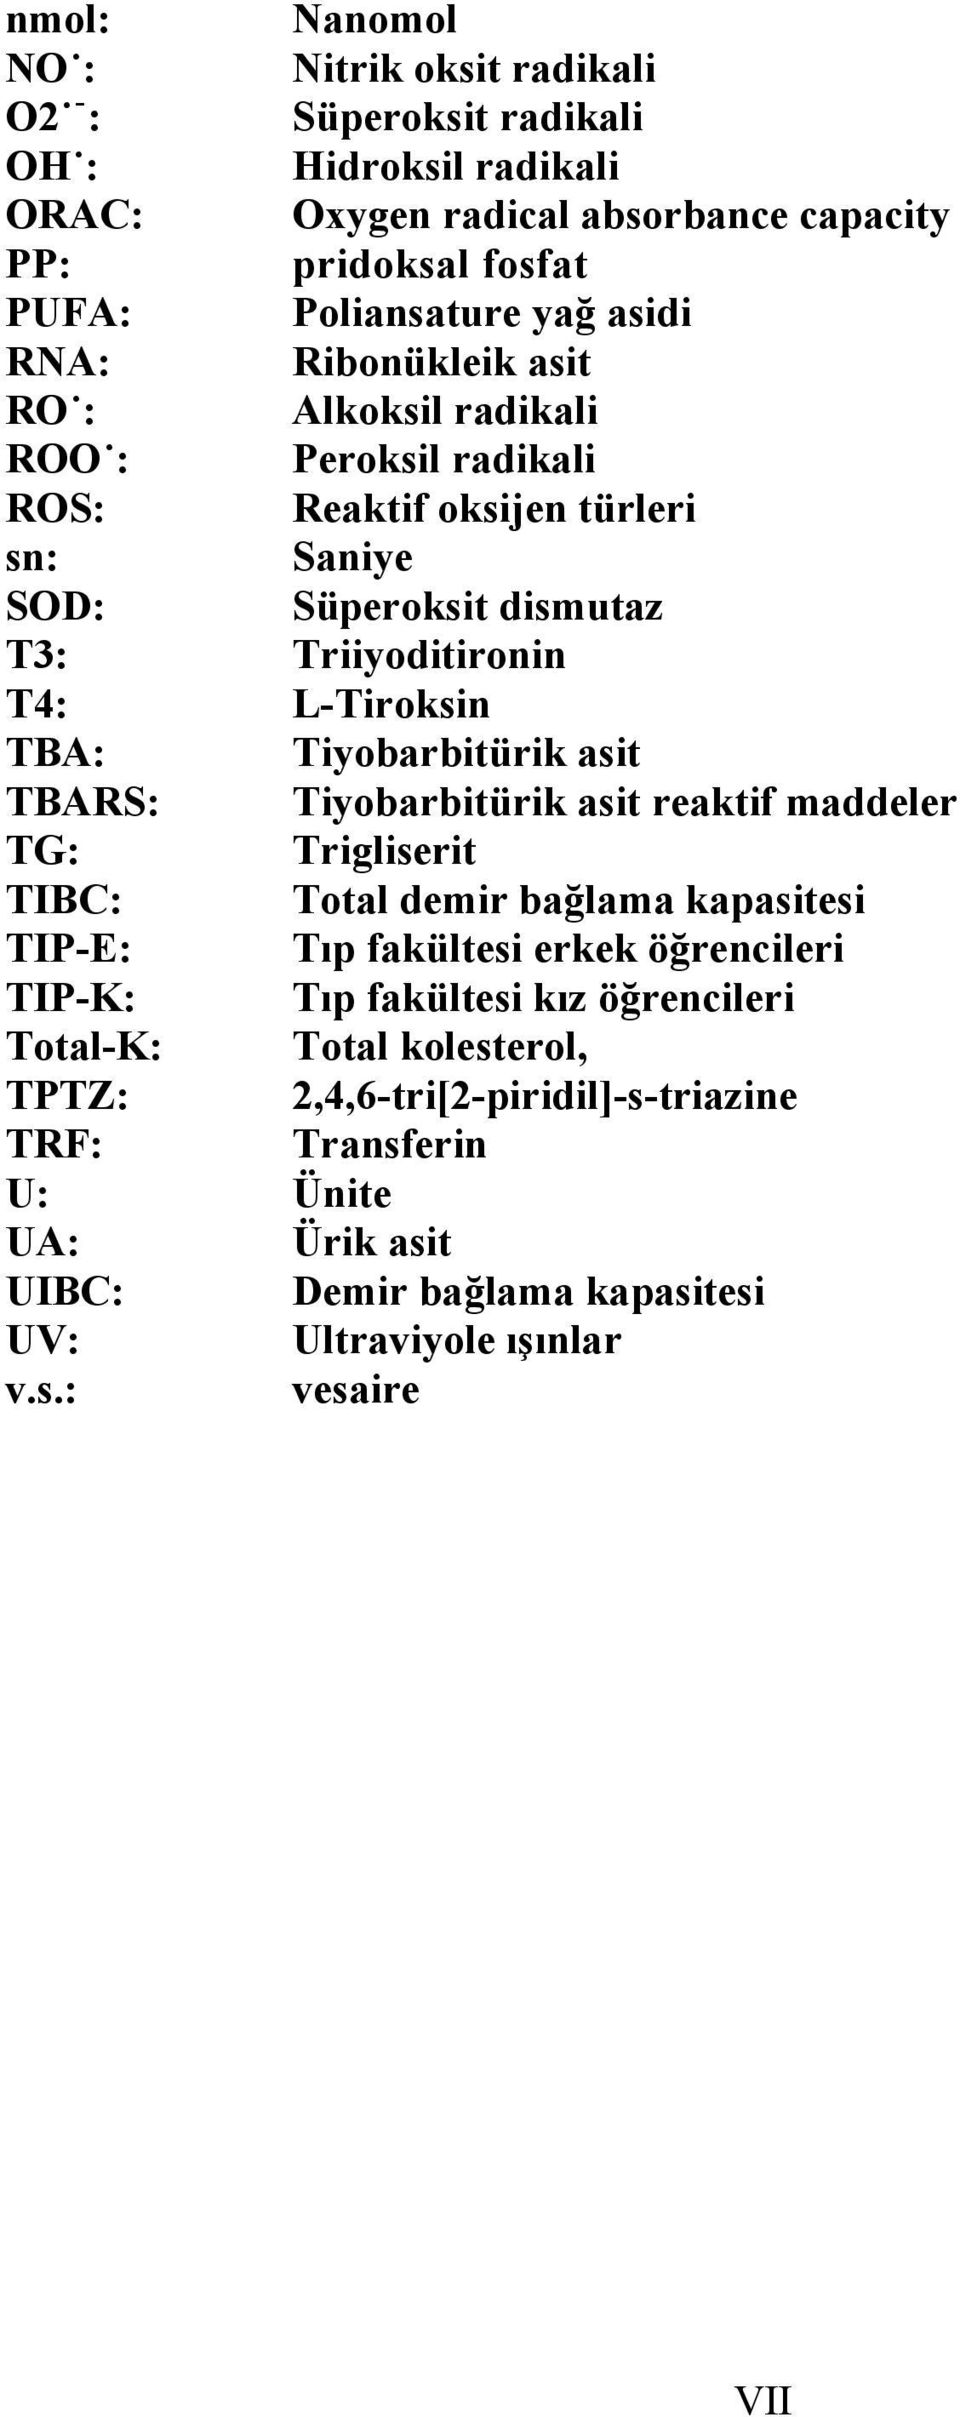 Tiyobarbitürik asit TBARS: Tiyobarbitürik asit reaktif maddeler TG: Trigliserit TIBC: Total demir bağlama kapasitesi TIP-E: Tıp fakültesi erkek öğrencileri TIP-K: Tıp fakültesi kız